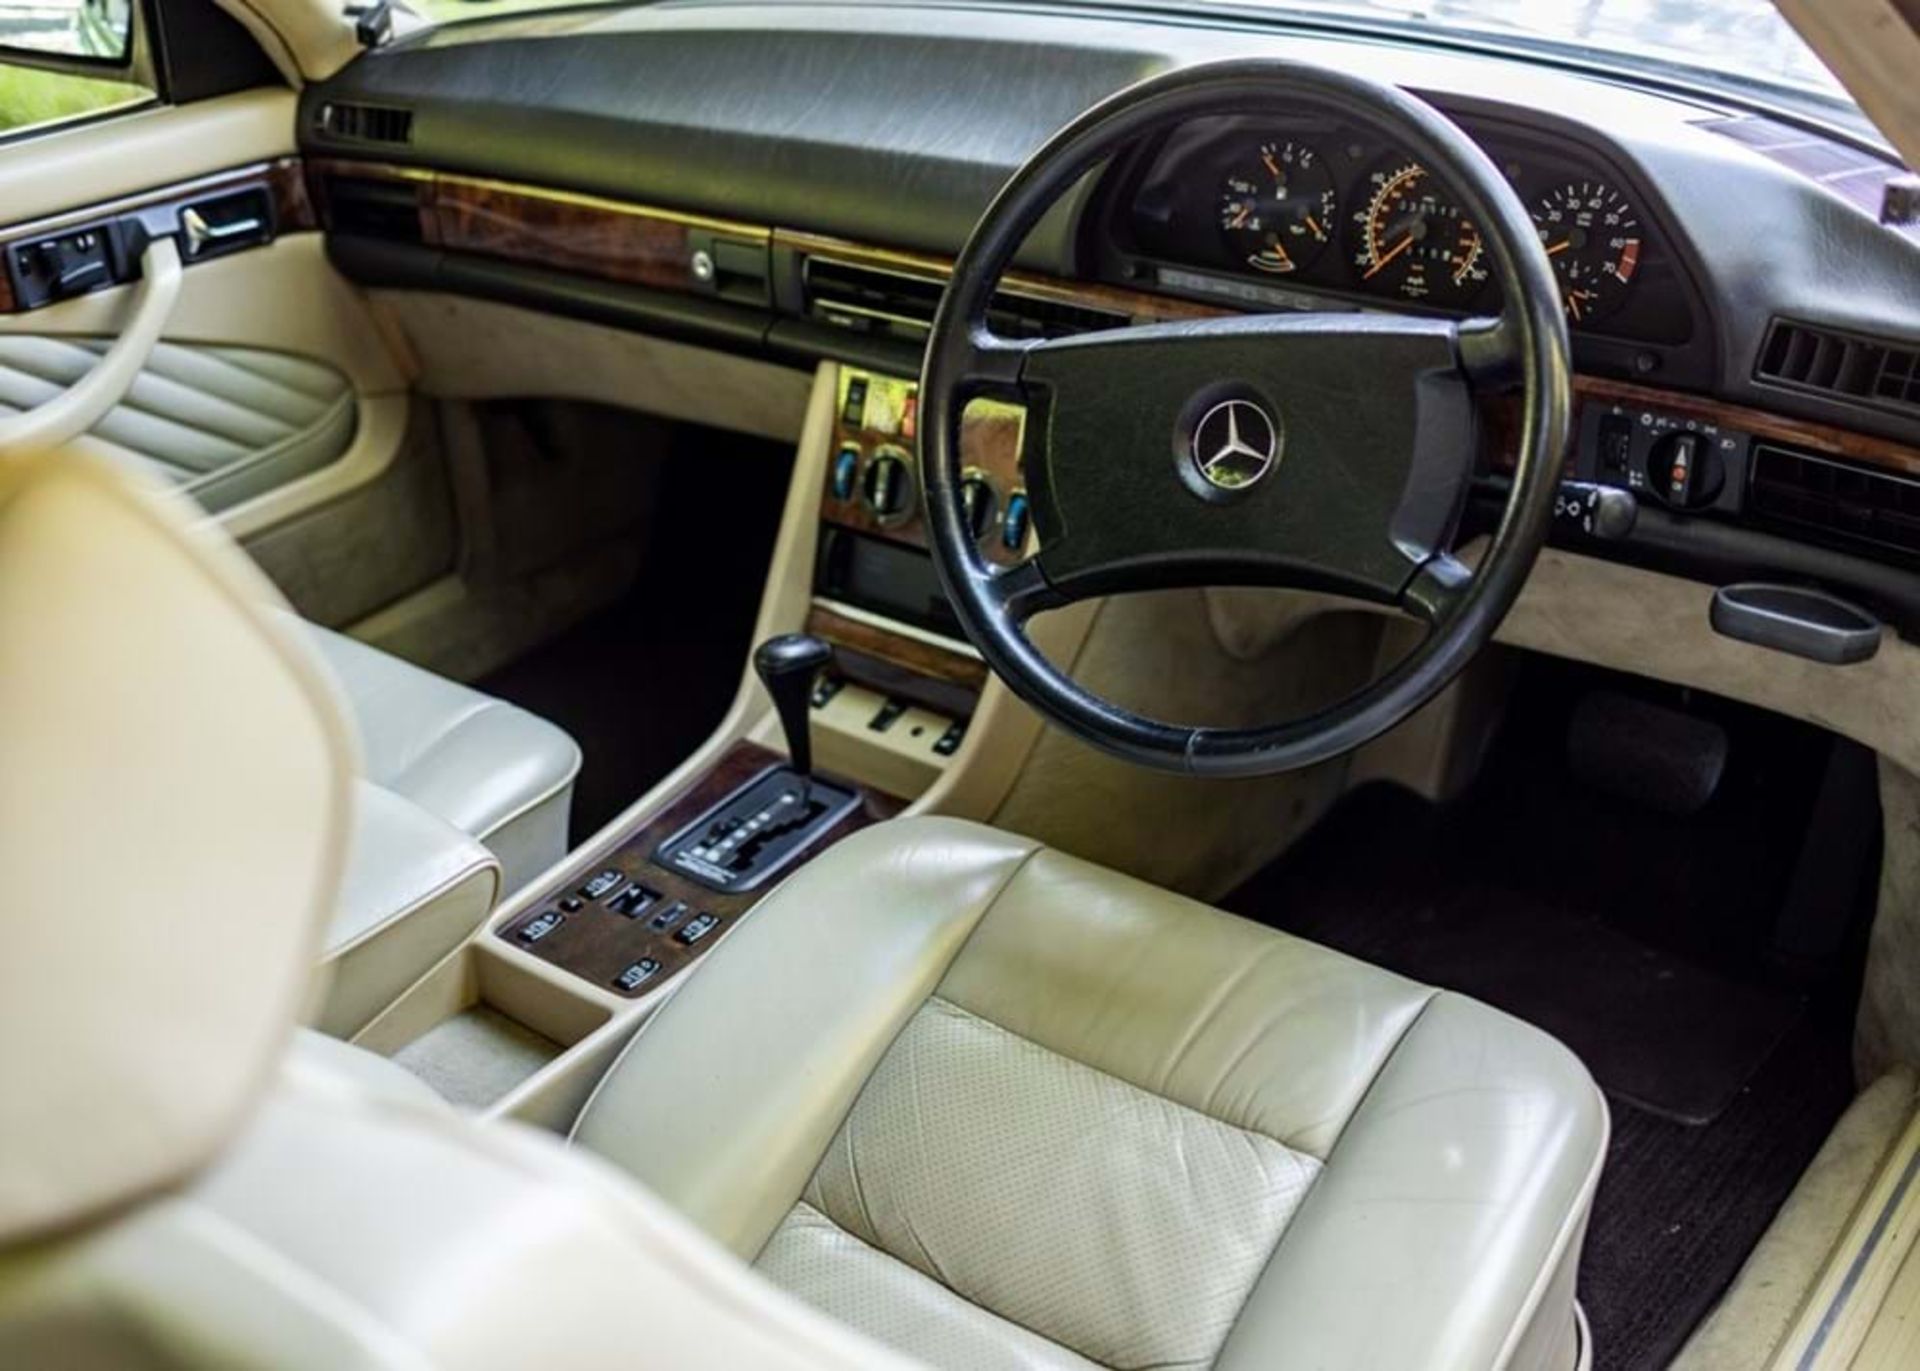 1990 Mercedes-Benz 560 SEC - Image 3 of 9